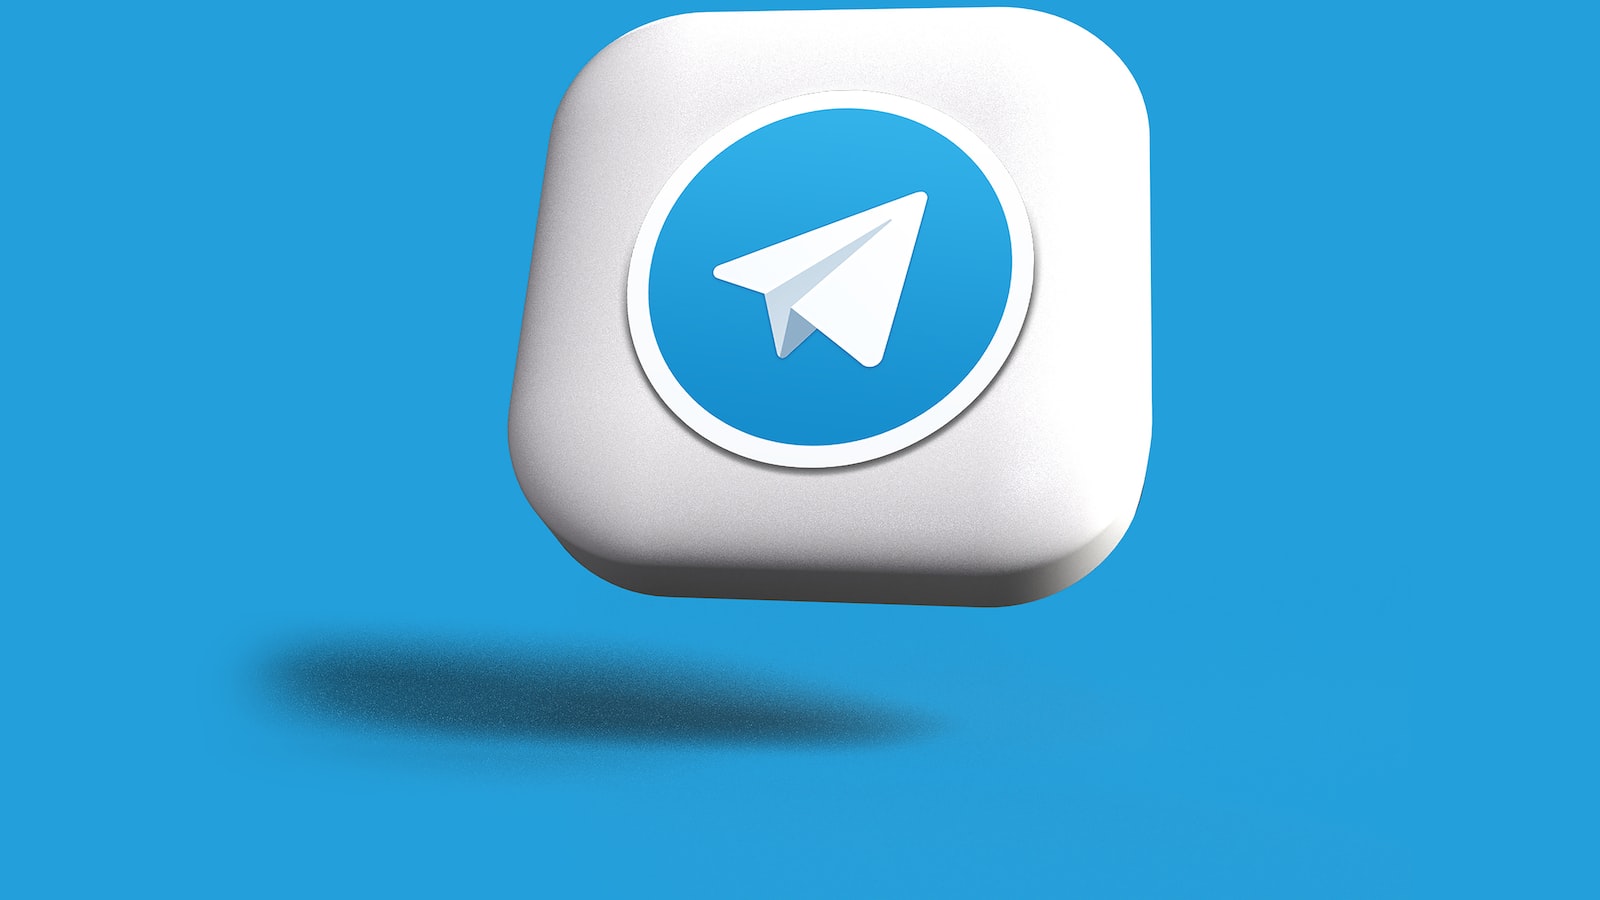 Telegram账号购买平台提供便捷获取个人或商业账号的方法